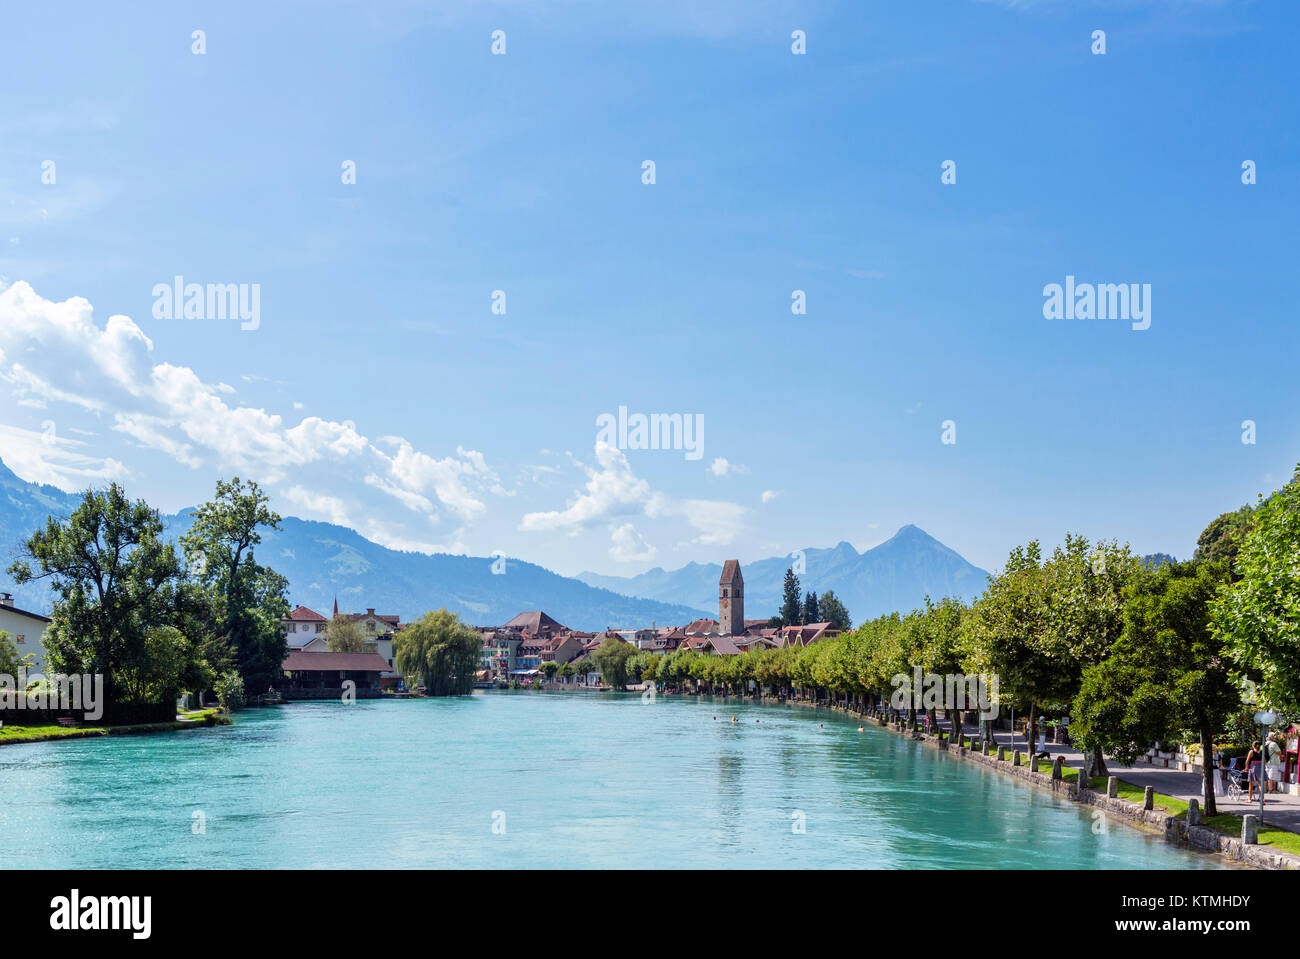 The River Aare looking towards the old town of Unterseen, Interlaken, Switzerland Stock Photo